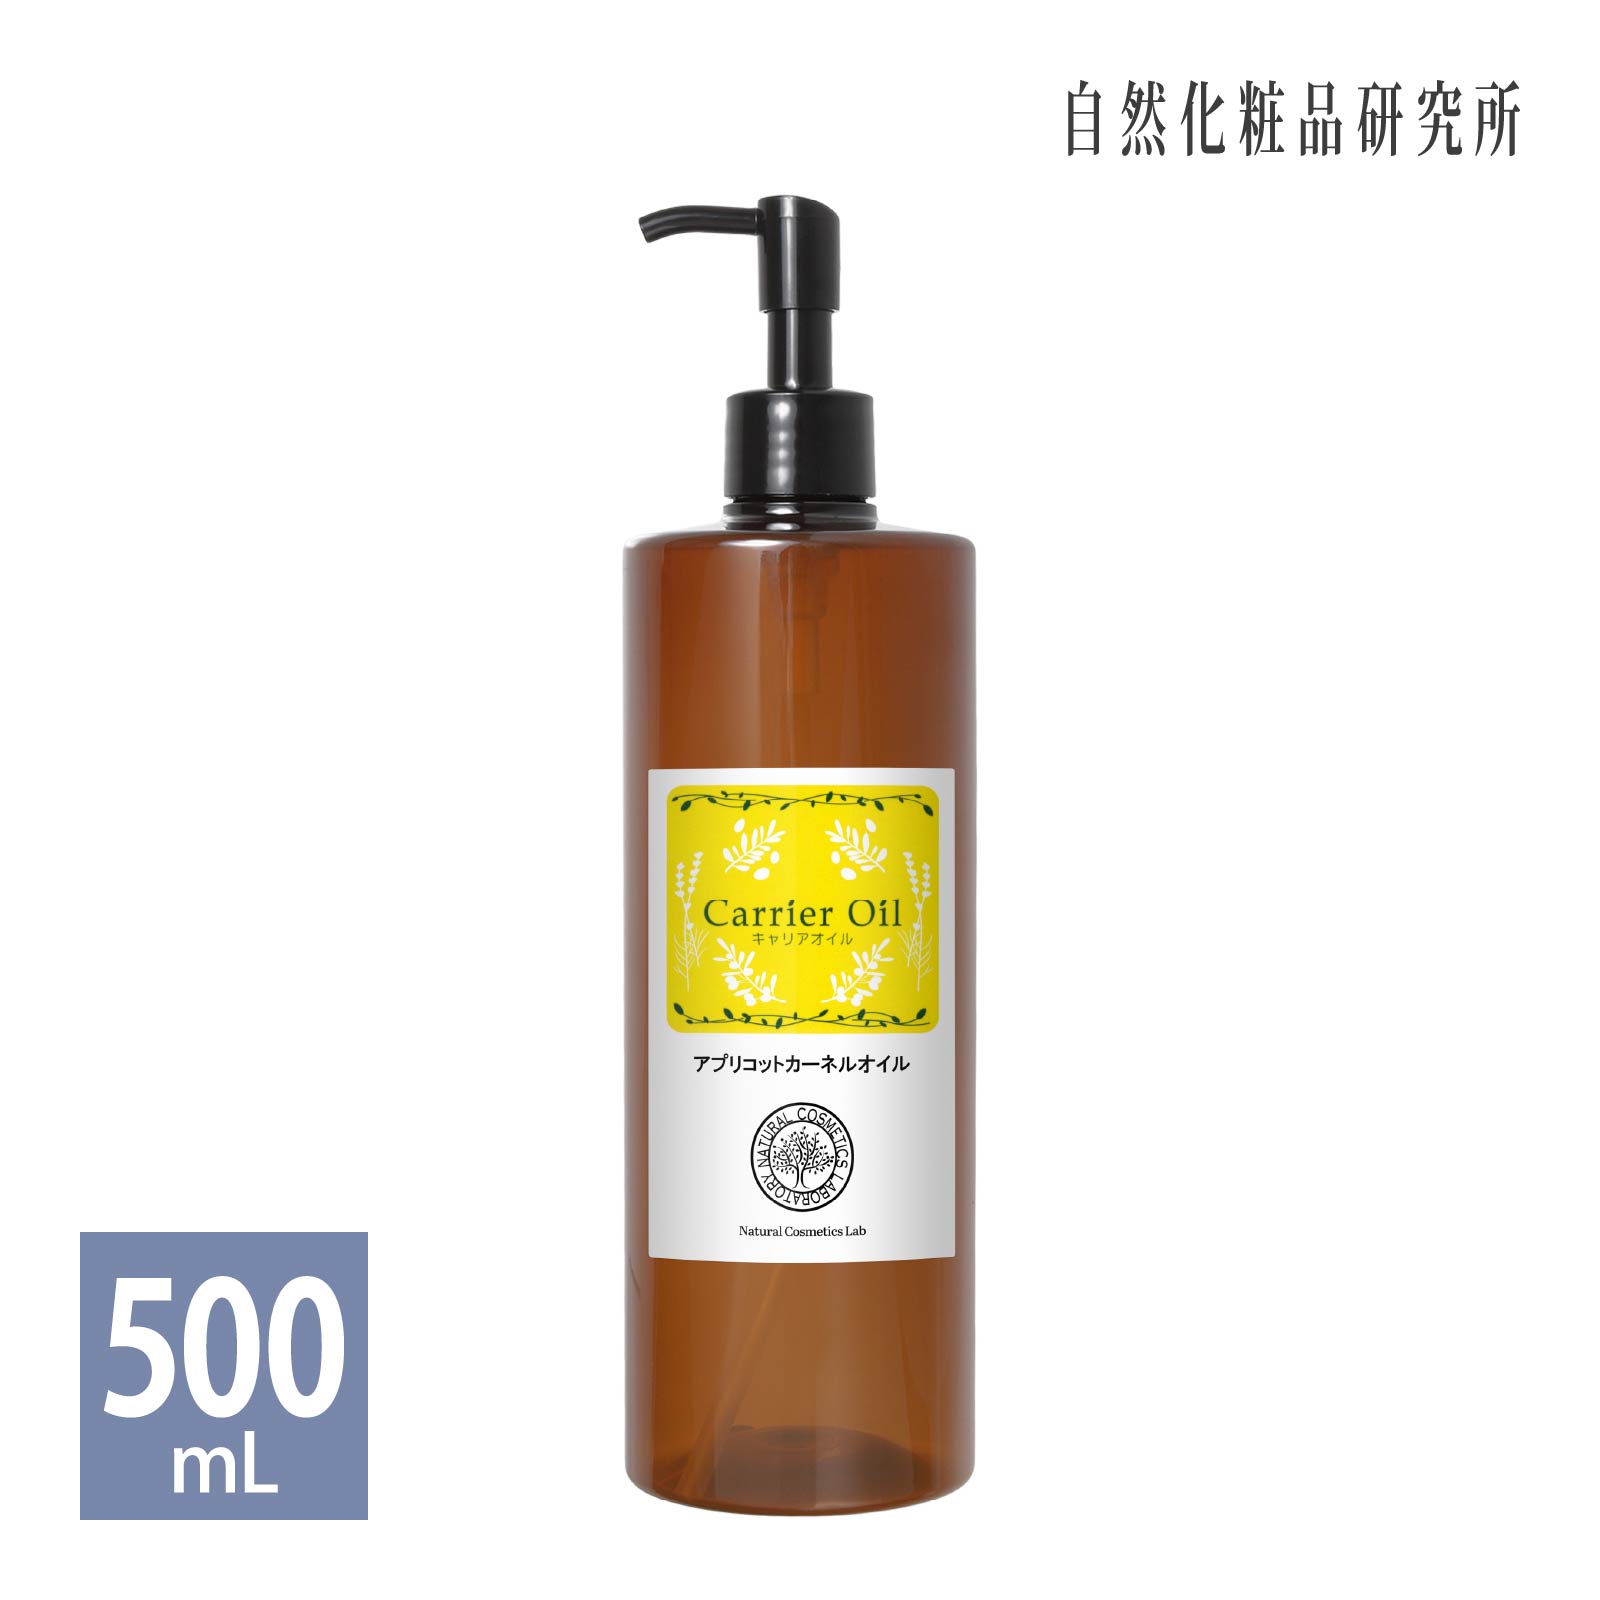 アプリコットカーネルオイル 500ml プラポンプ  杏仁油 無添加 精製 アプリコットオイル パーシック油 キャリアオイル スキンケア 美容オイル